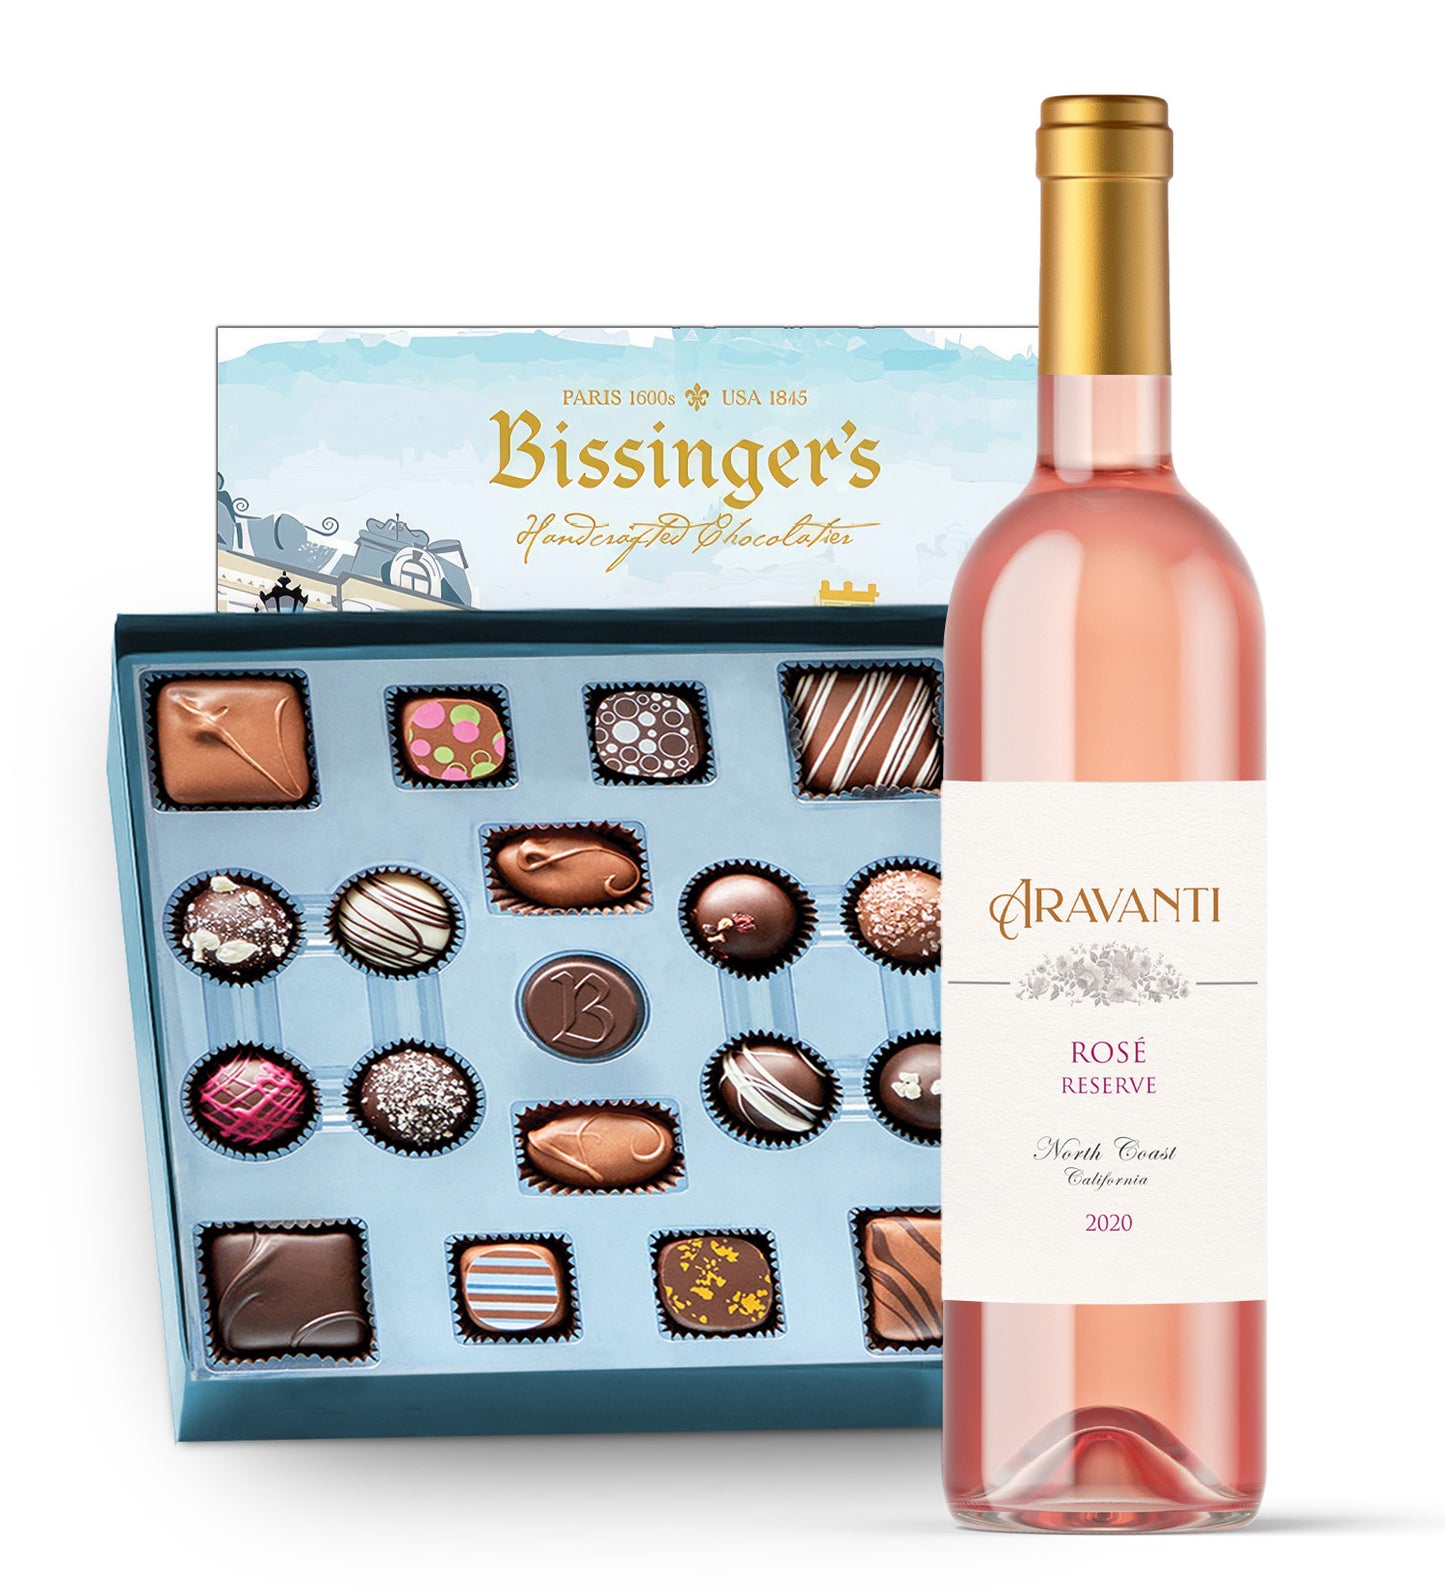 Aravanti Rosé & Bissinger's French Connection Chocolates